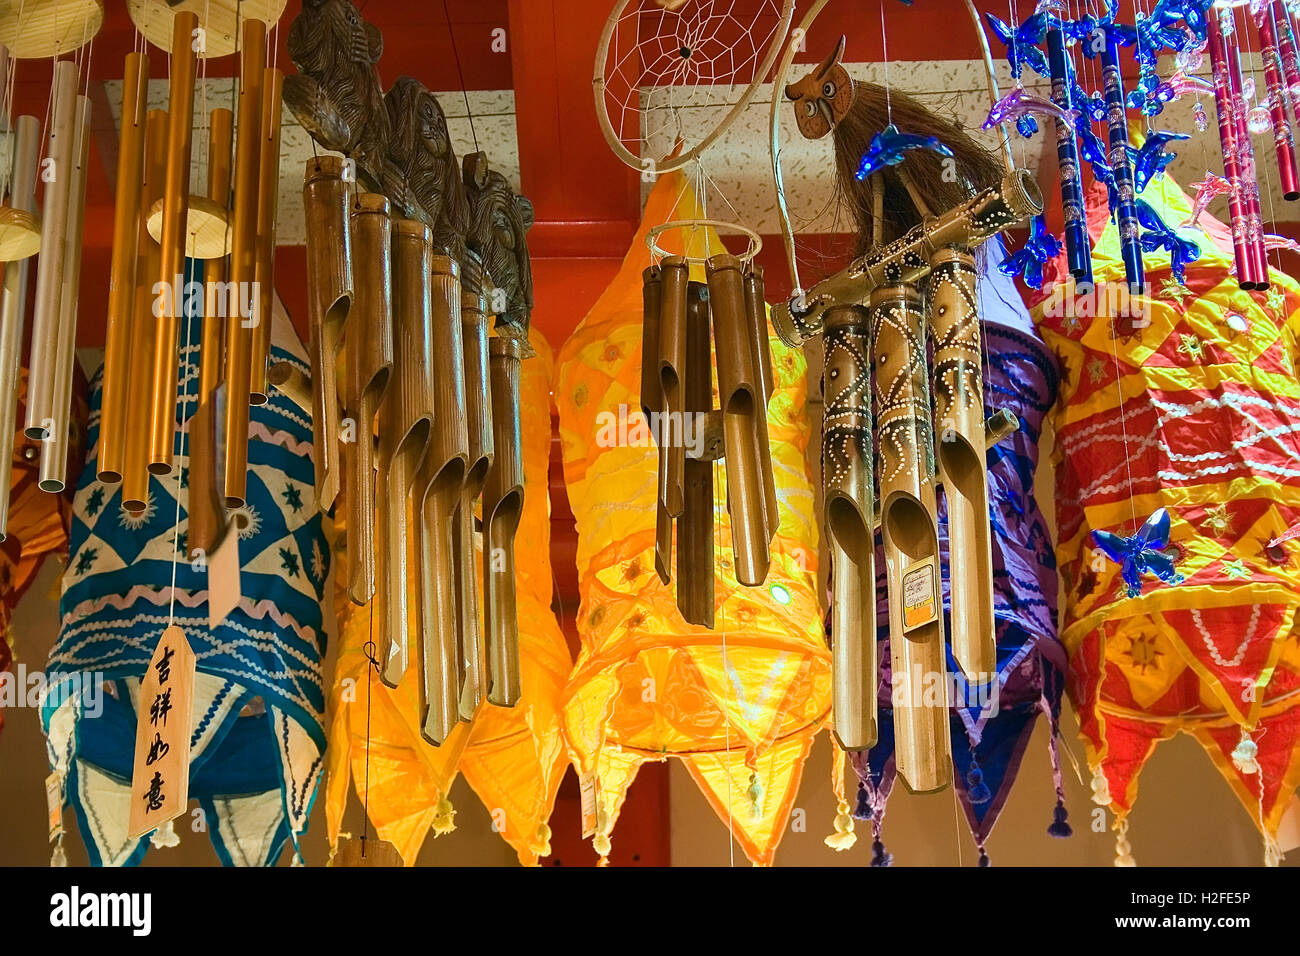 Suoni del vento e le luci fairy in un negozio di souvenir in vendita. Orientamento orizzontale. Foto Stock